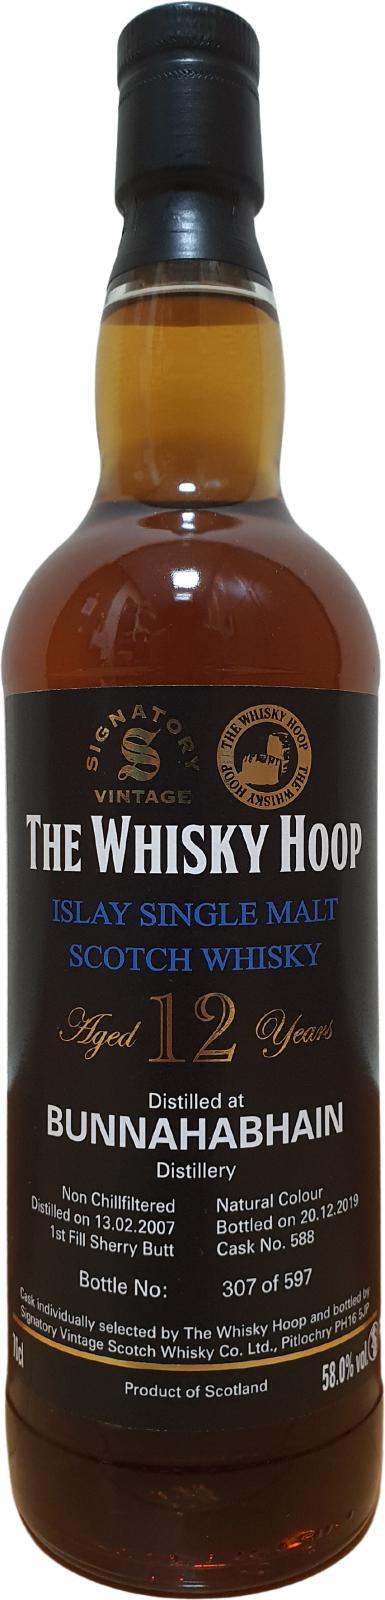 Bunnahabhain 2007 SV The Whisky Hoop 1st Fill Ex-Sherry Butt #588 58% 700ml